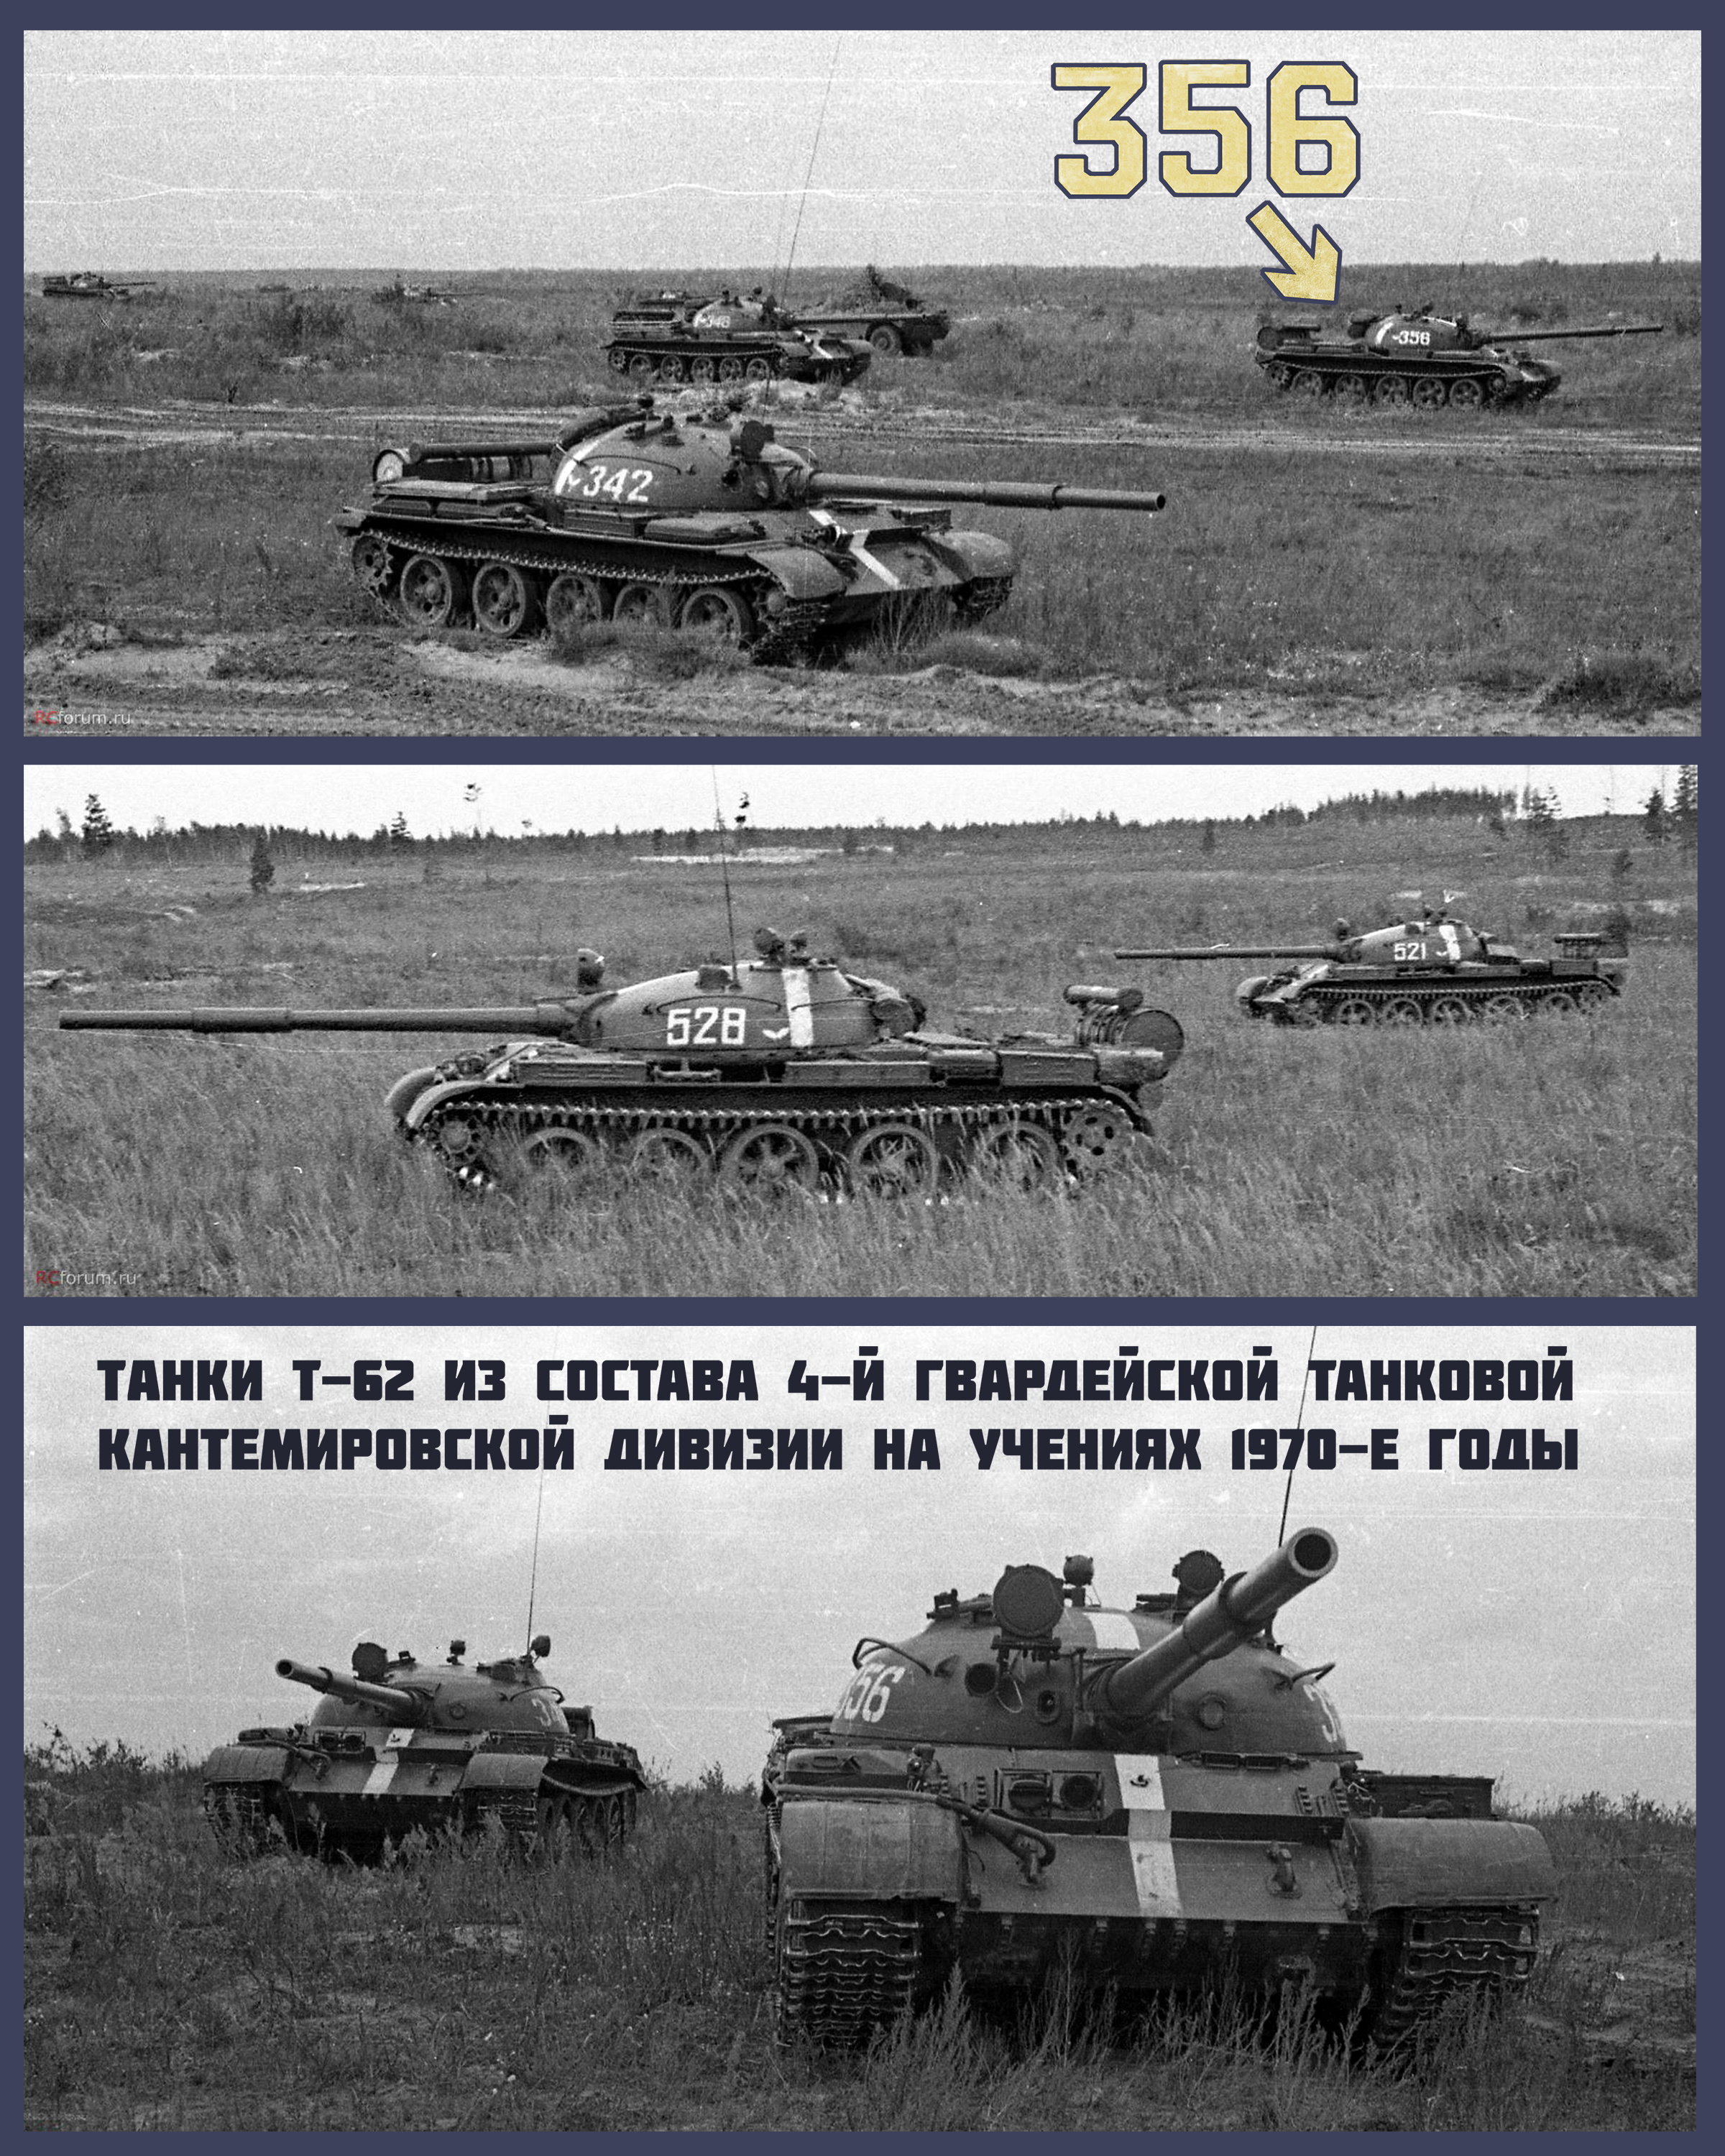 Т-62 Кантемировской дивизии